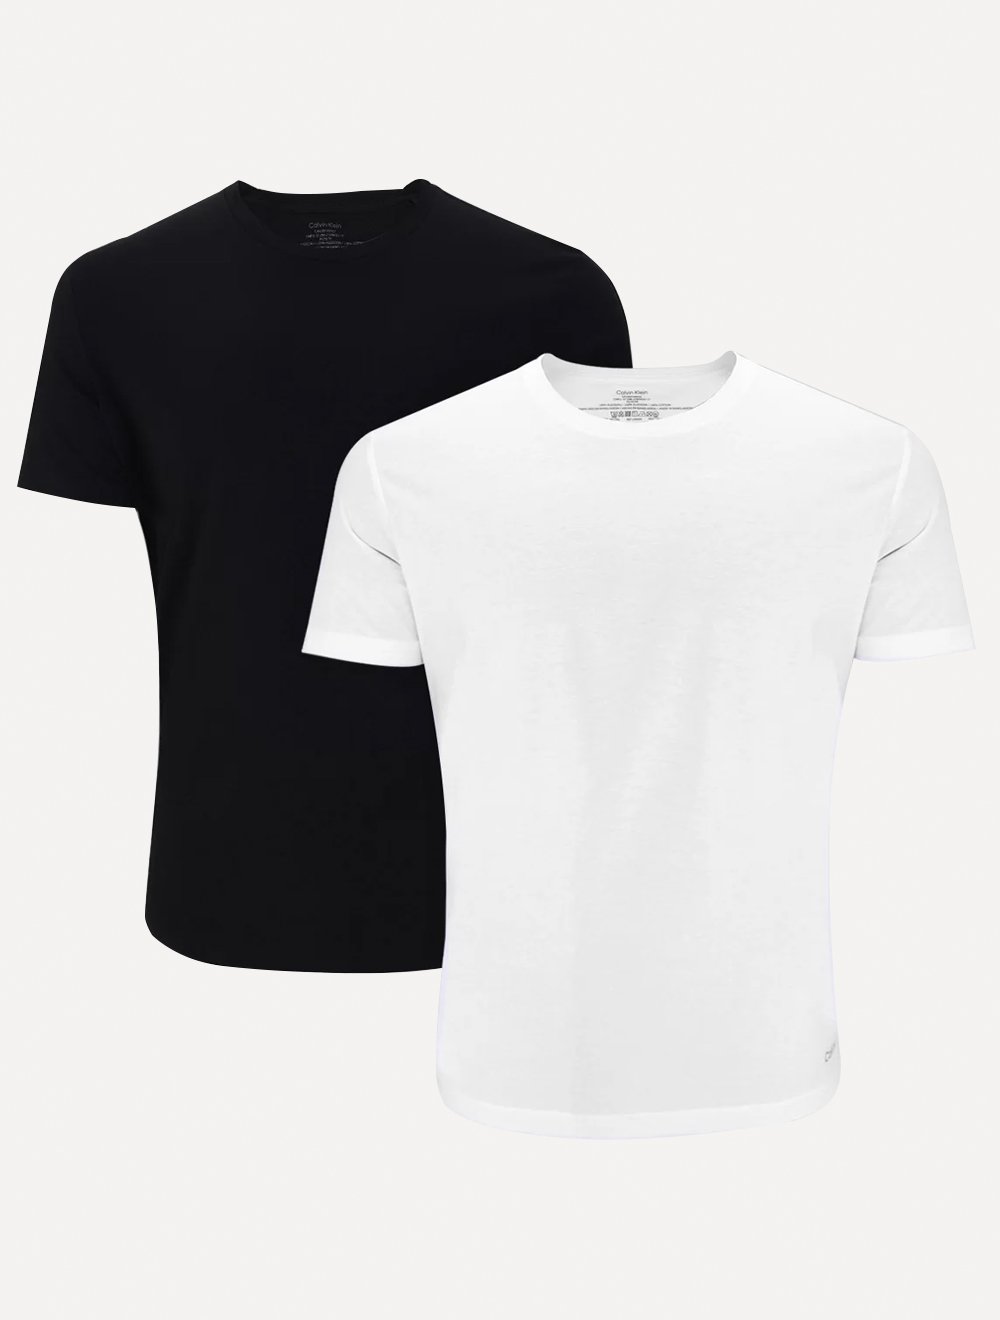 Camisetas Calvin Klein Underwear Masculinas C-Neck Branca e Preta Pack 2UN